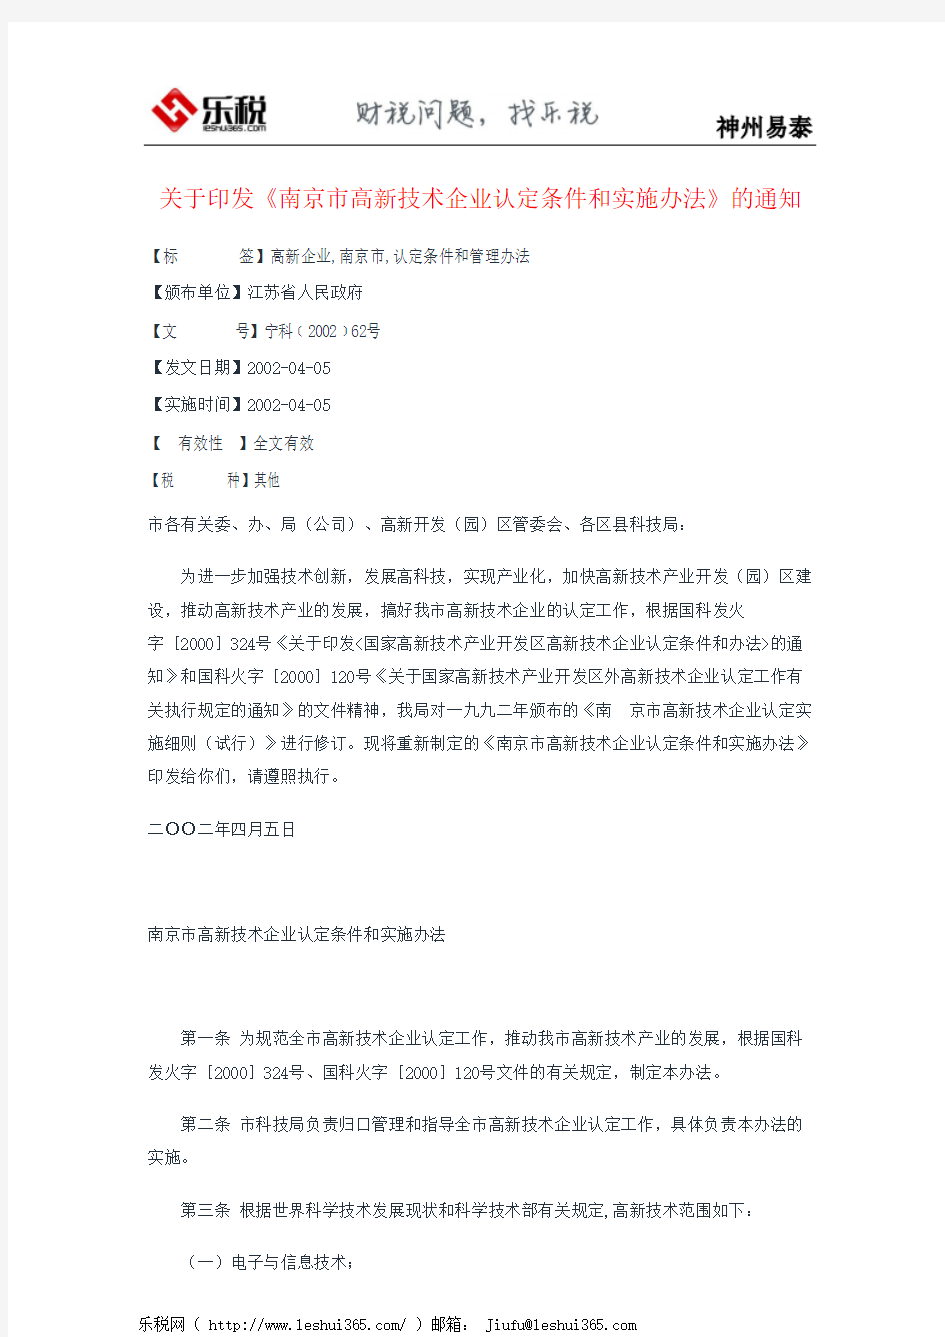 关于印发《南京市高新技术企业认定条件和实施办法》的通知